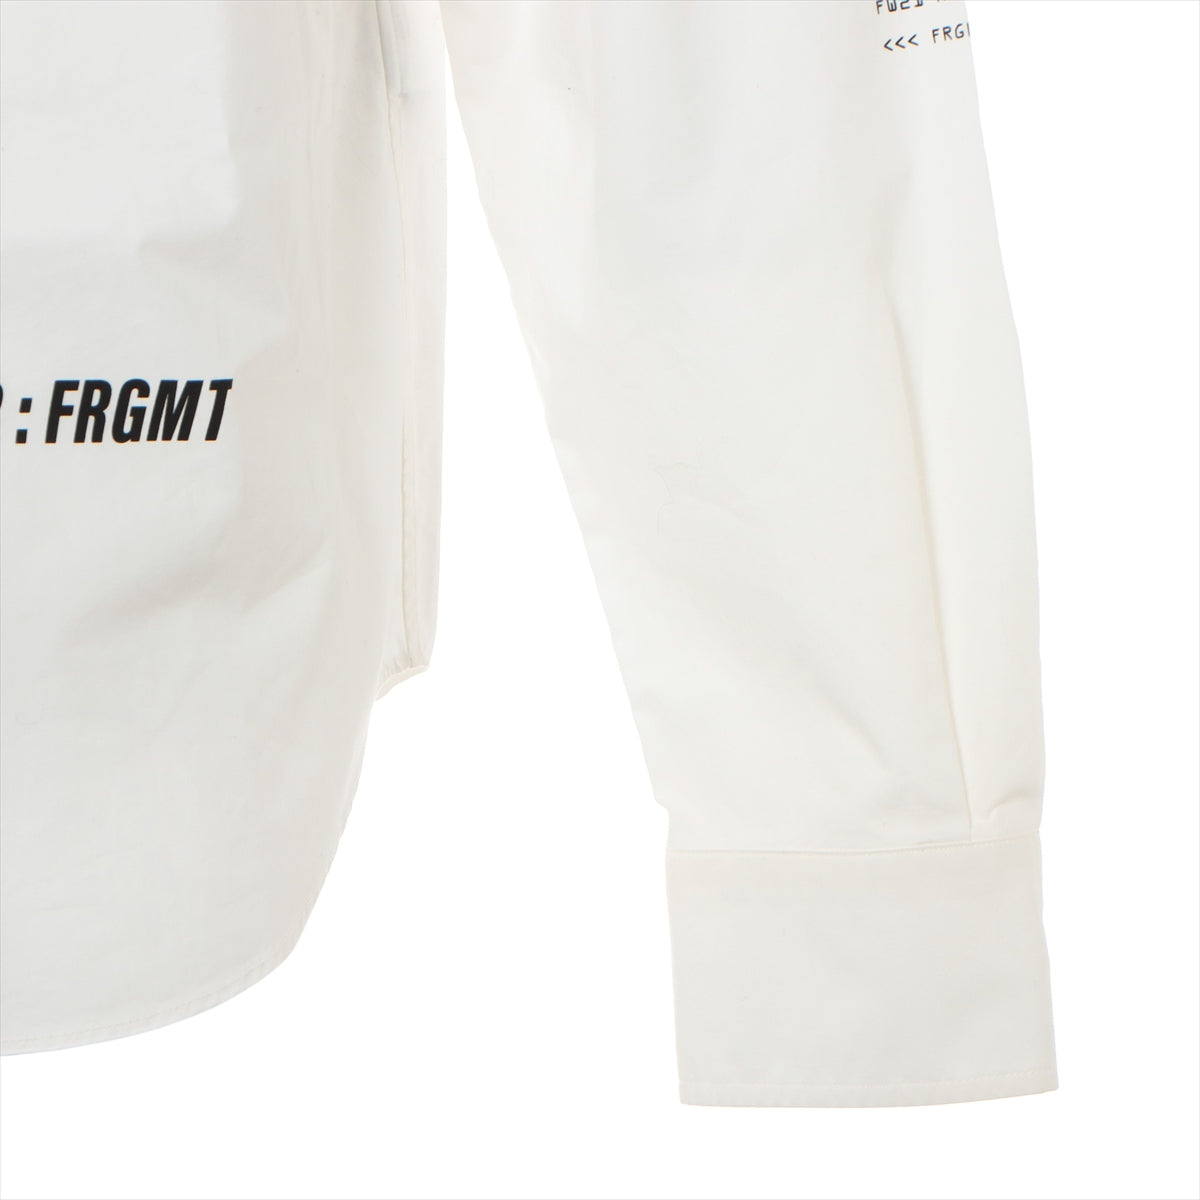 Moncler Genius Fragment 21 years Cotton Shirt 3 Men's White  HIROSHI FUJIWARA